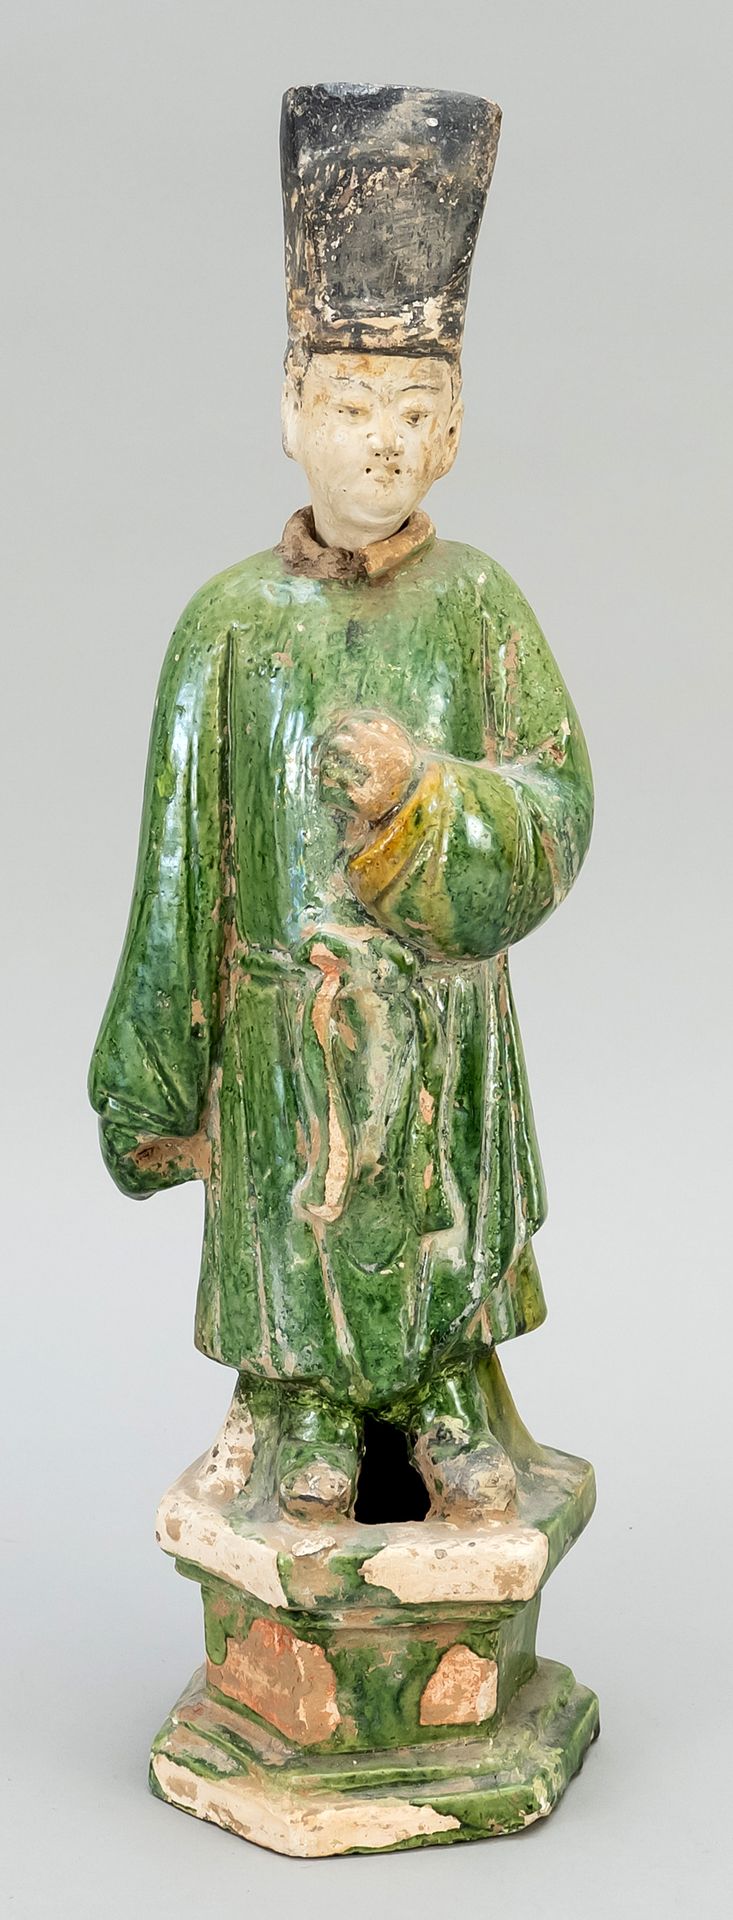 Null 泥塑，中国，年代不详（唐朝时期）。图中放置在一个六角形的底座上，有插入的头。部分上色，底座和袍子为三彩釉，高41厘米。